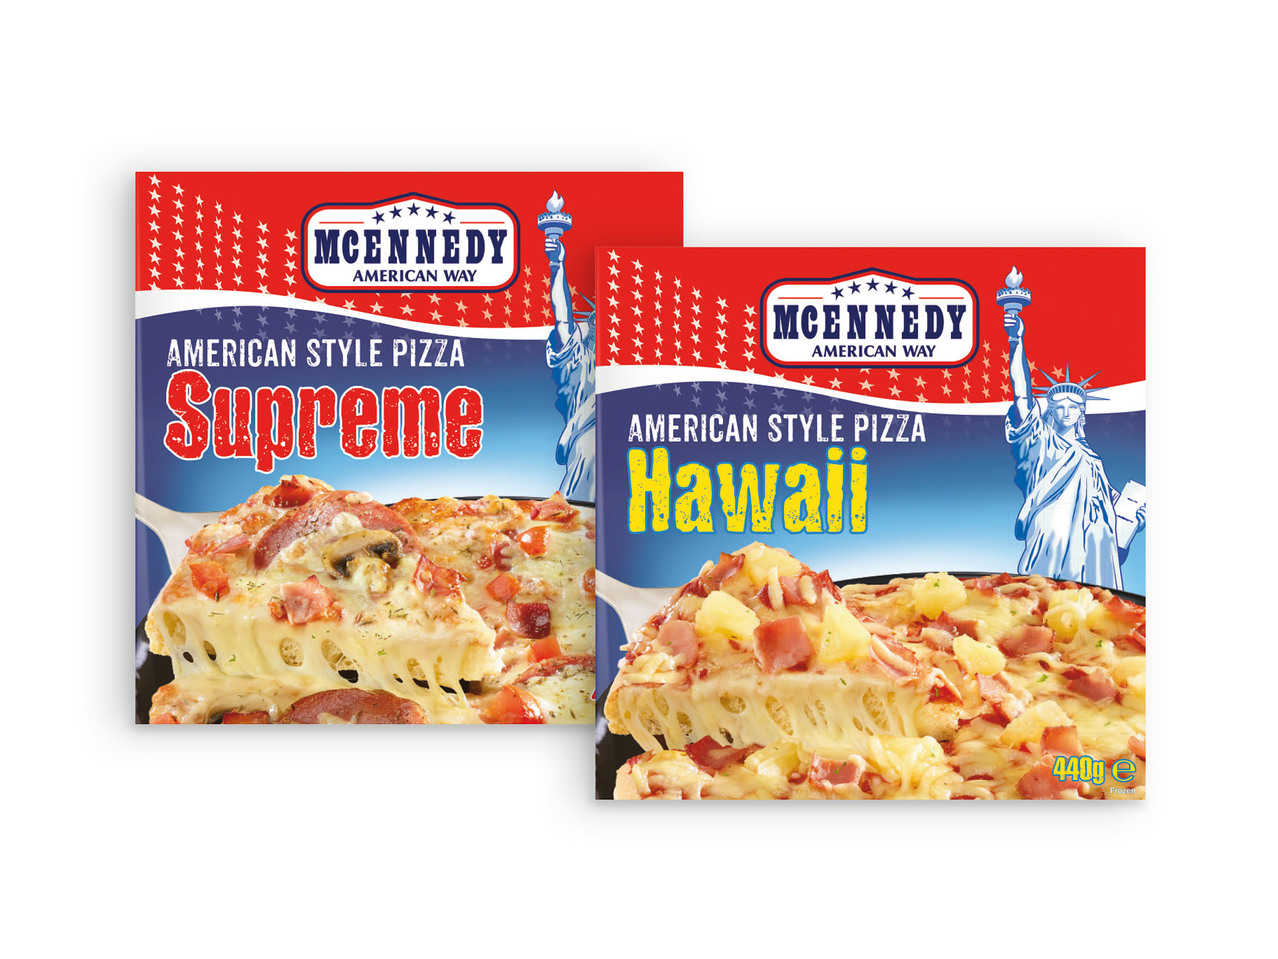 MCENNEDY(R) Pizza Americana